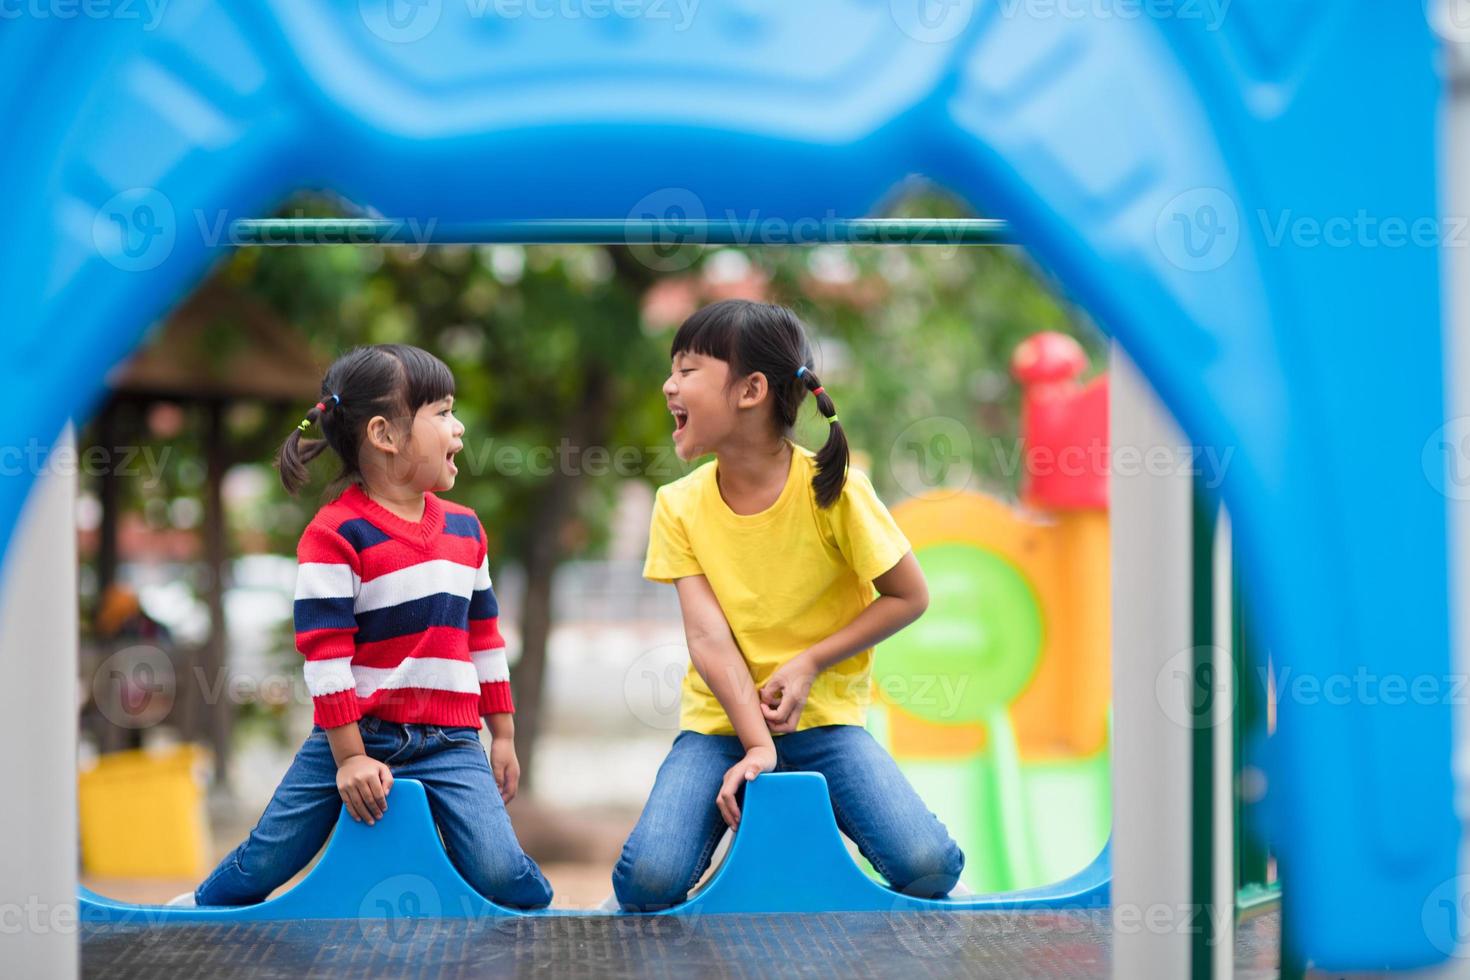 mignonnes petites filles frères et sœurs s'amusant sur l'aire de jeux à l'extérieur le jour d'été ensoleillé photo